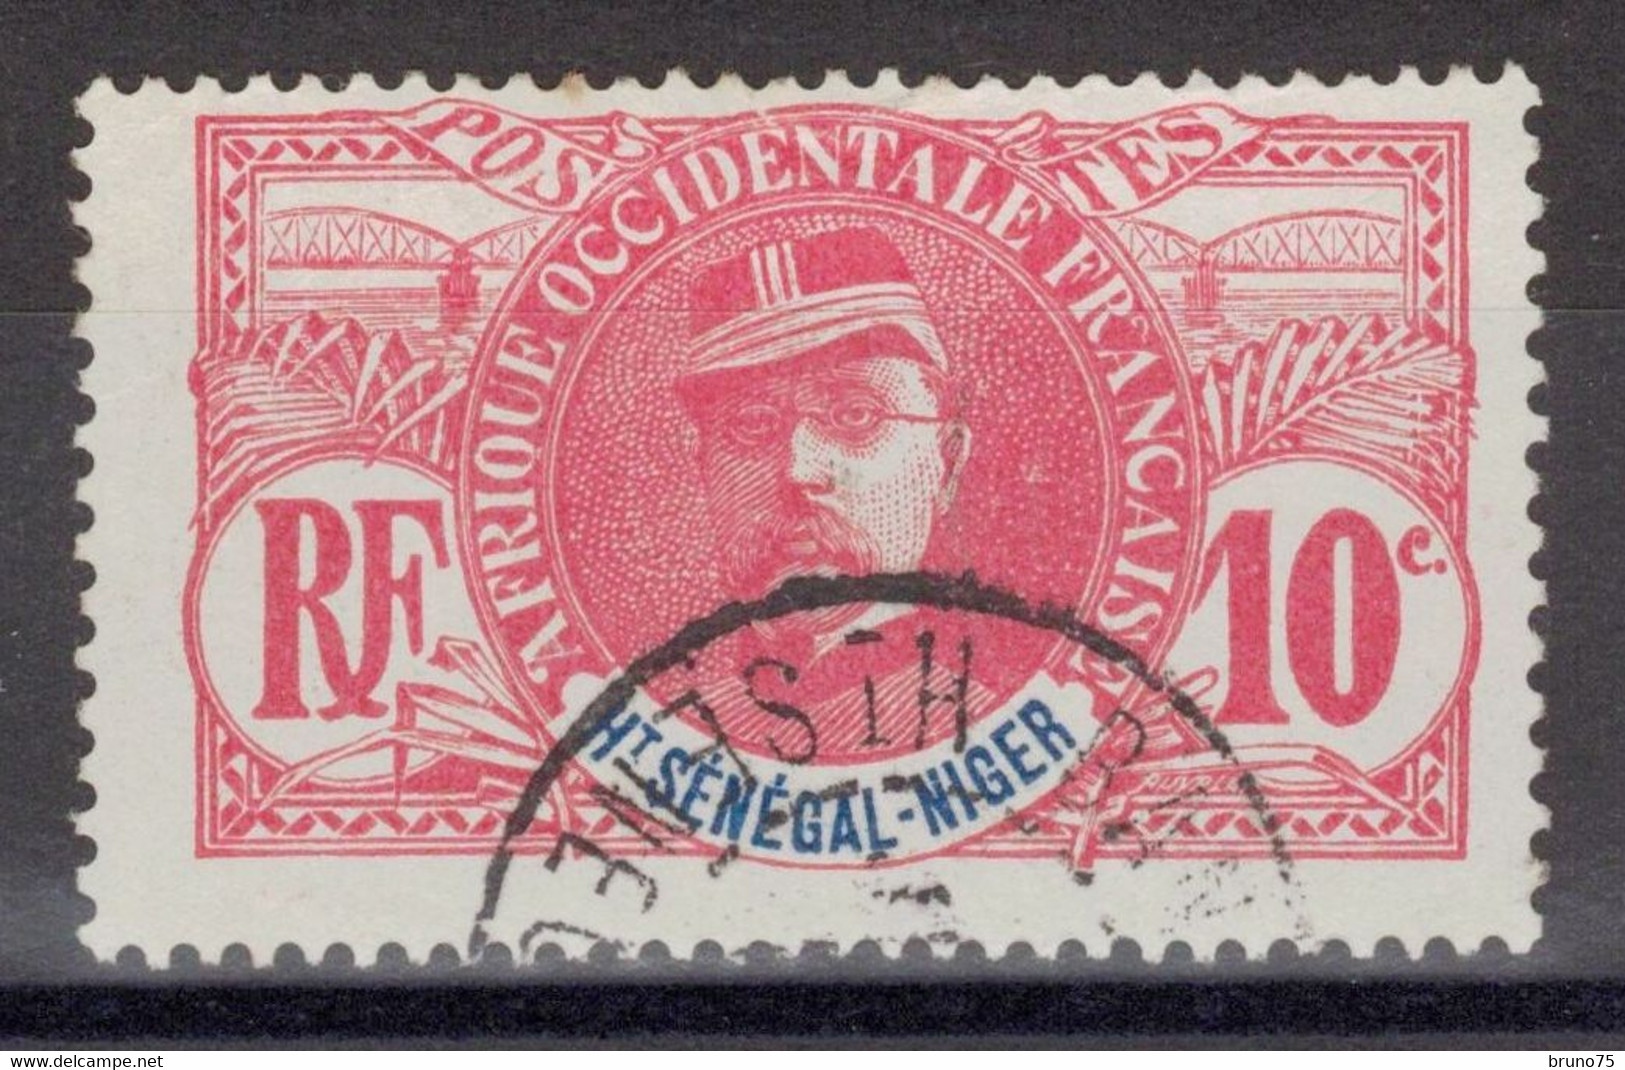 Haut-Sénégal Et Niger - YT 5 Oblitéré - 1906 - Usati